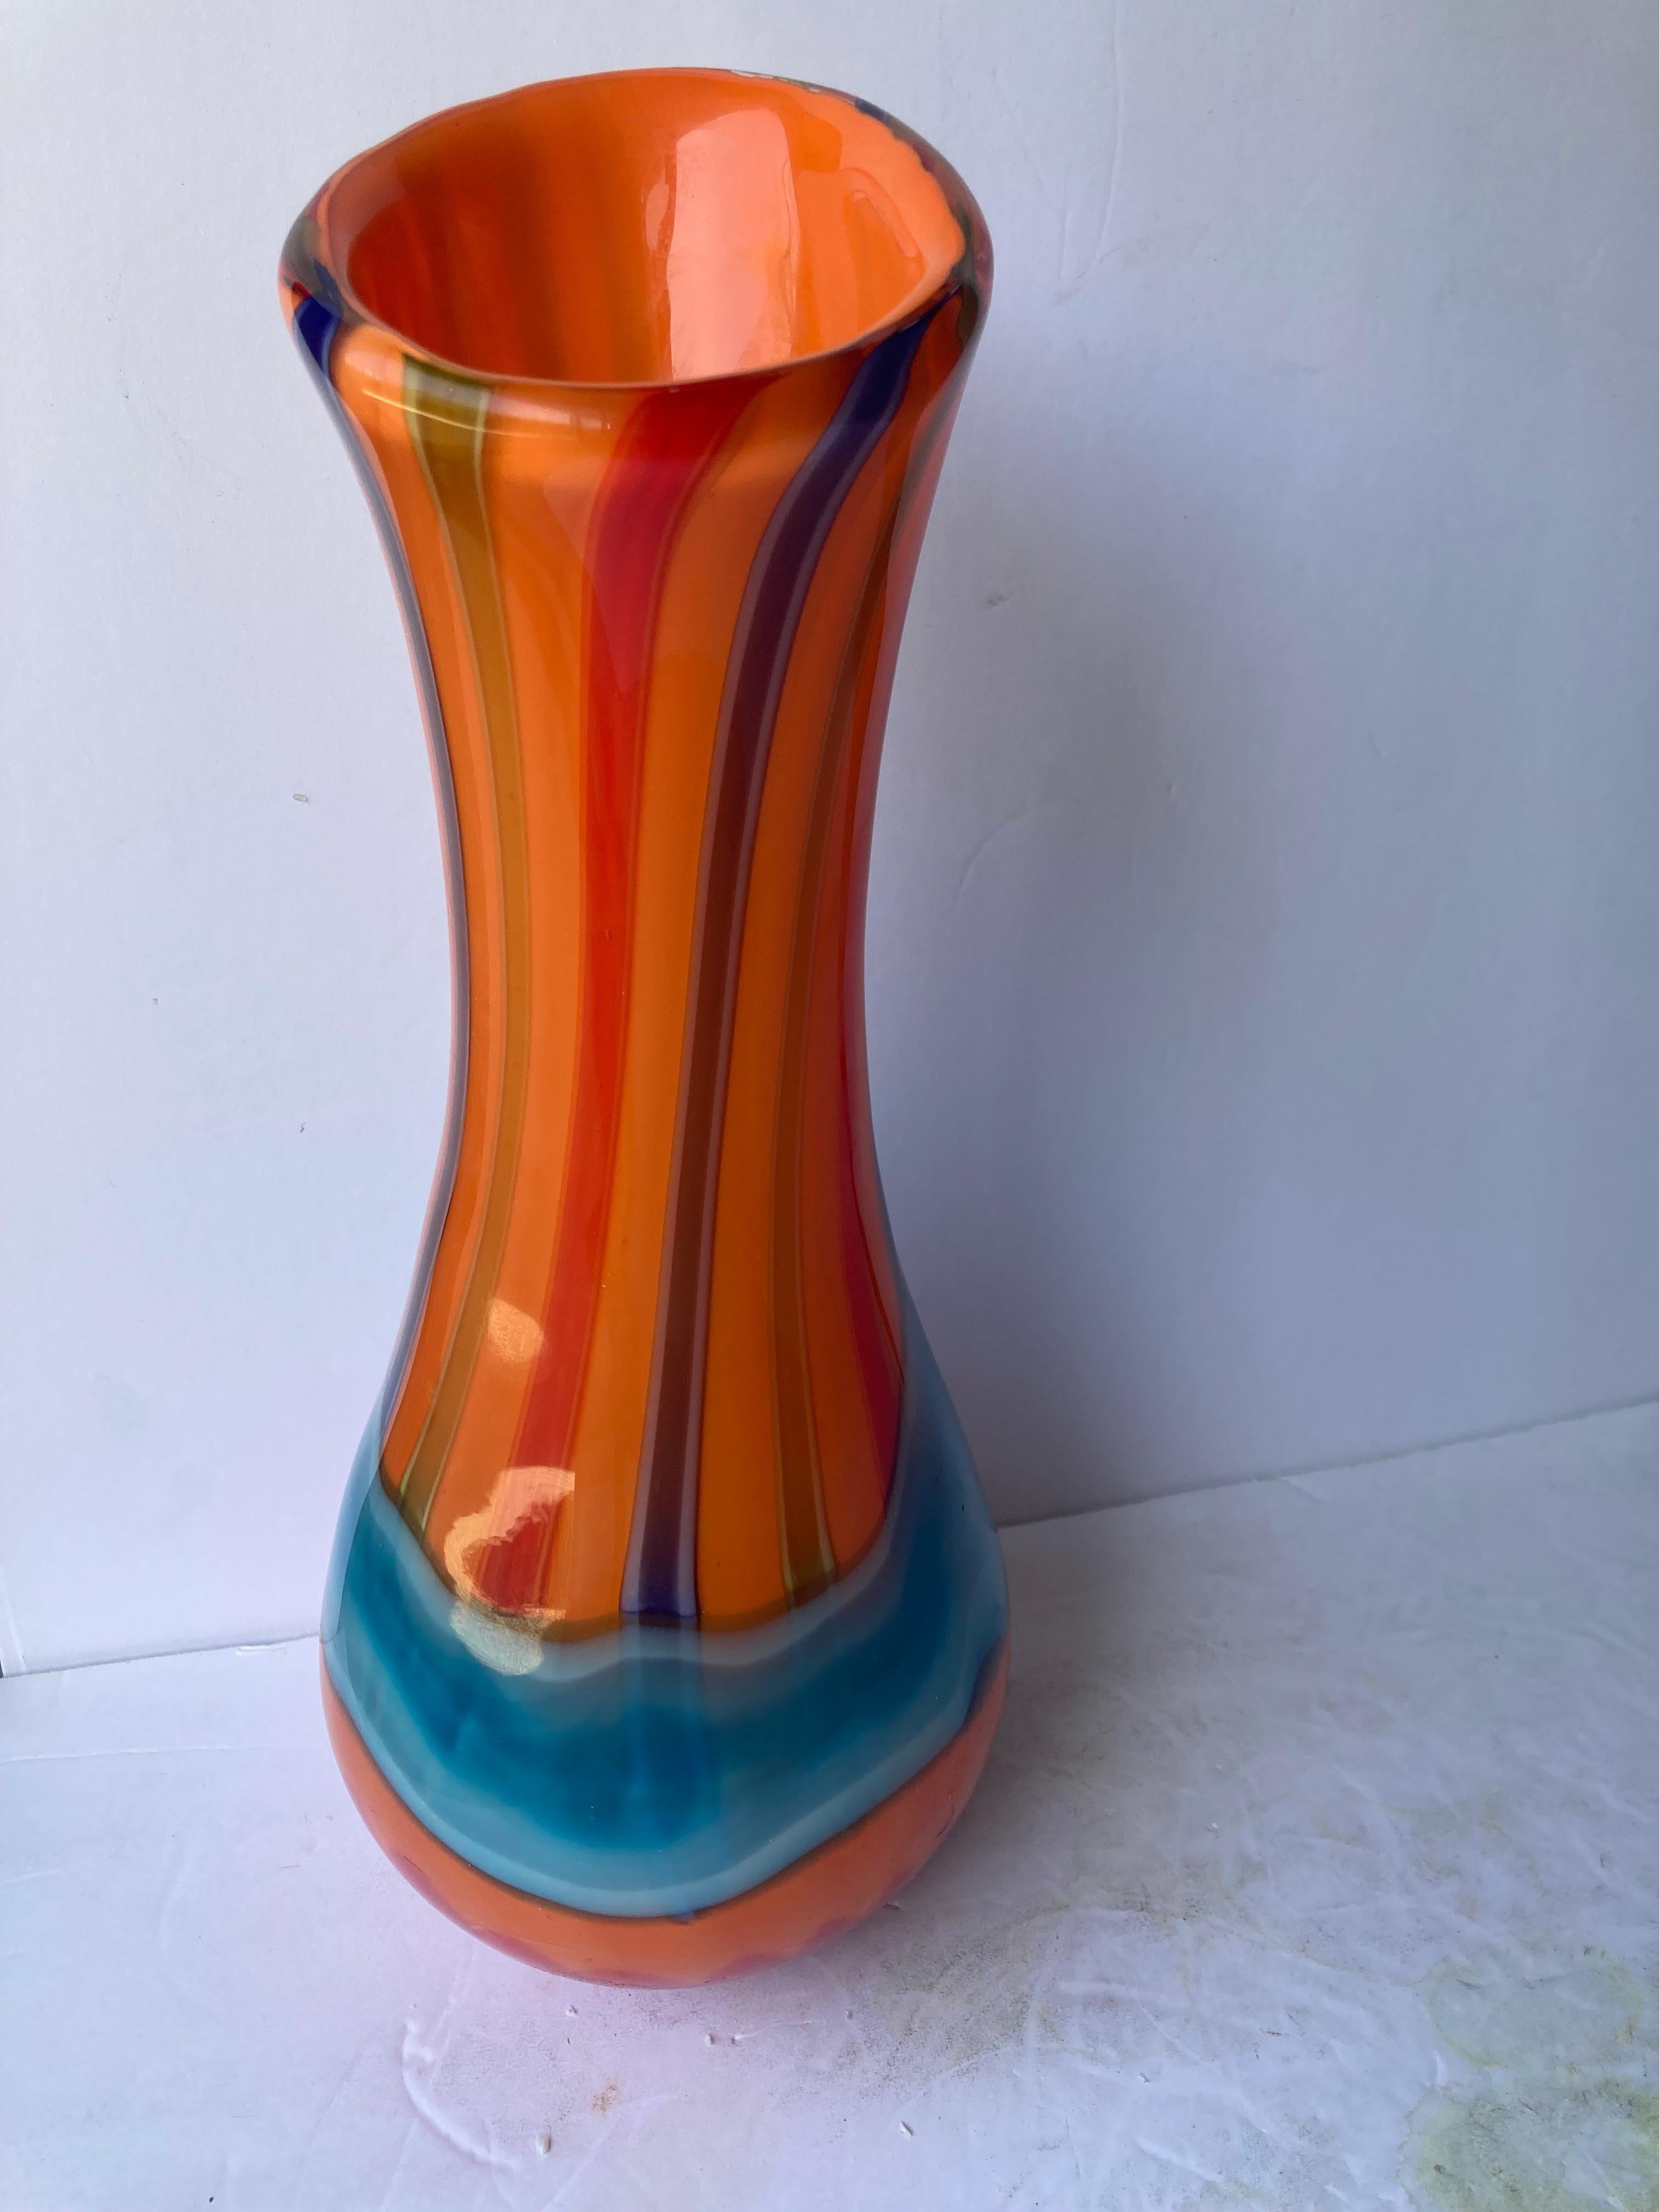 Très beau et grand vase en verre d'un artiste souffleur de verre très connu.